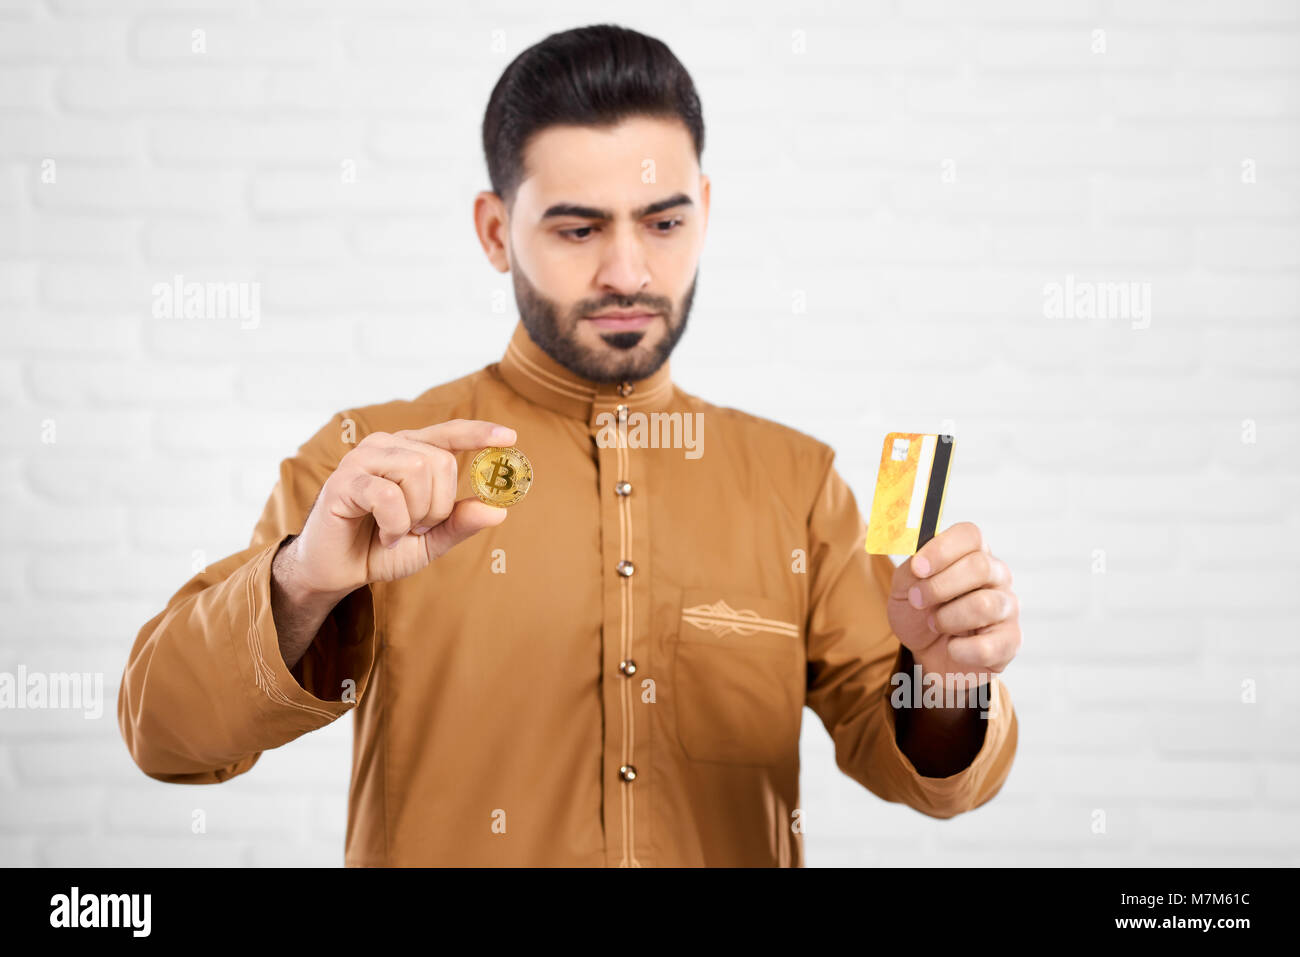 Beau être sérieux musulman pendant la recherche de carte de crédit et holding bitcoin or Banque D'Images